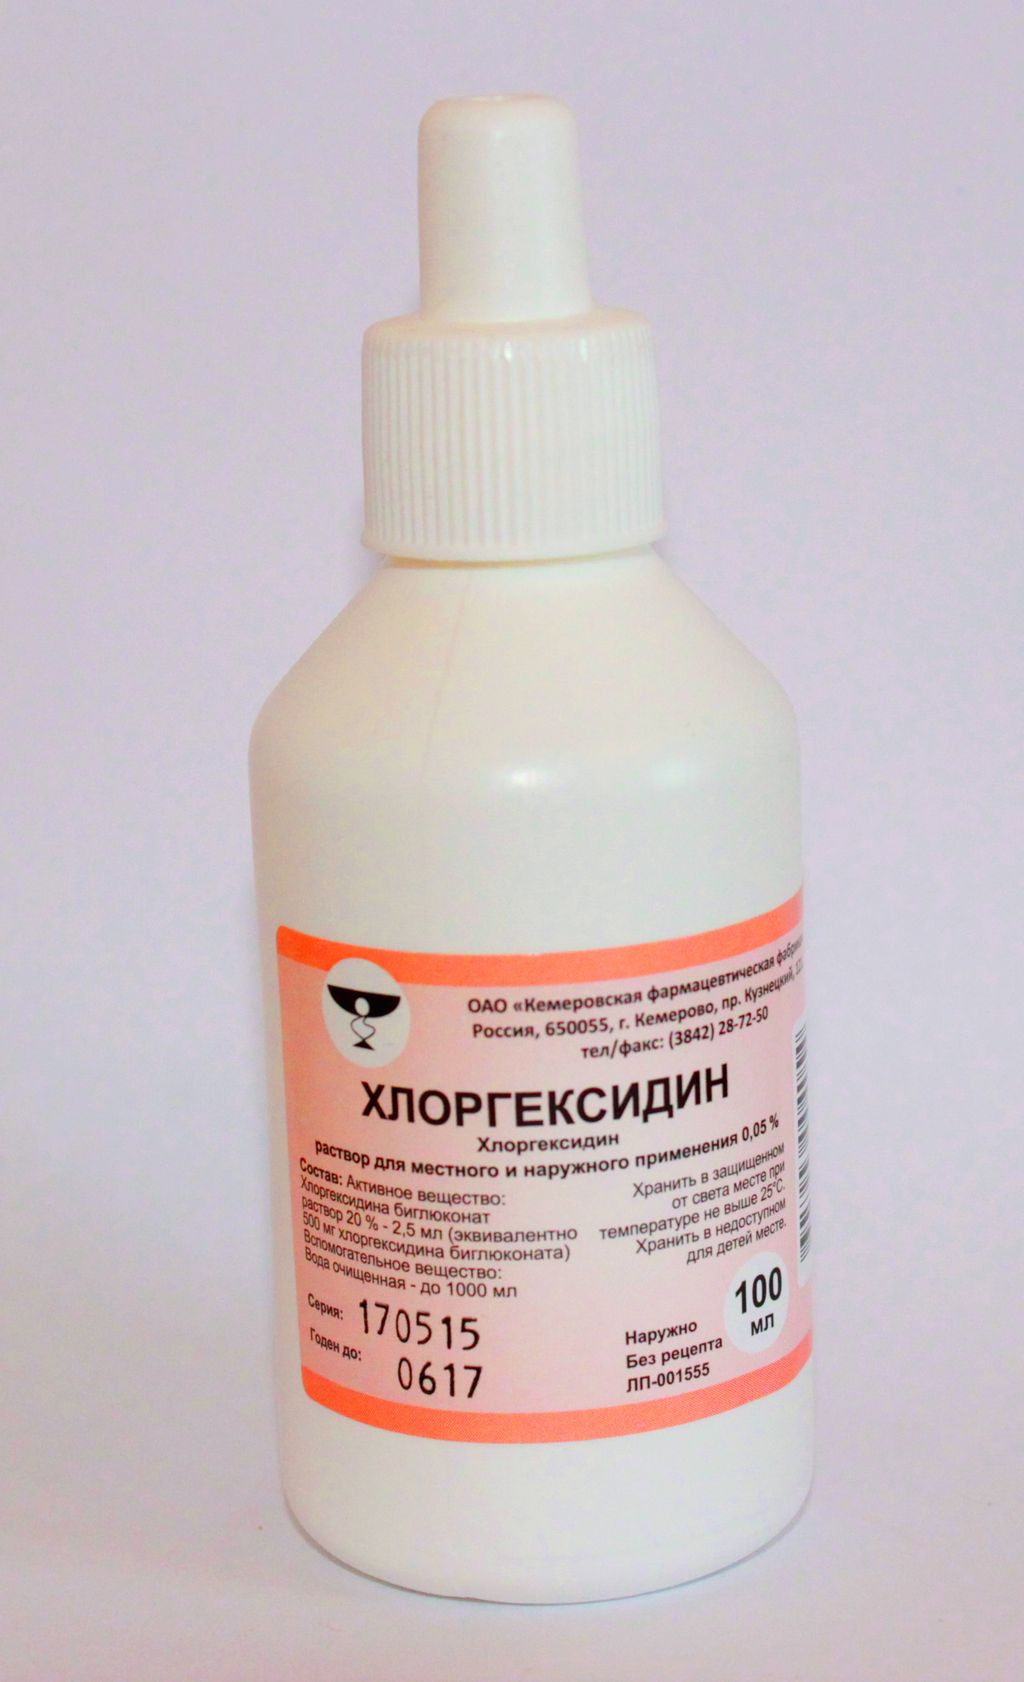 Хлоргексидин, 0.05%, Раствор Для Местного И Наружного Применения.